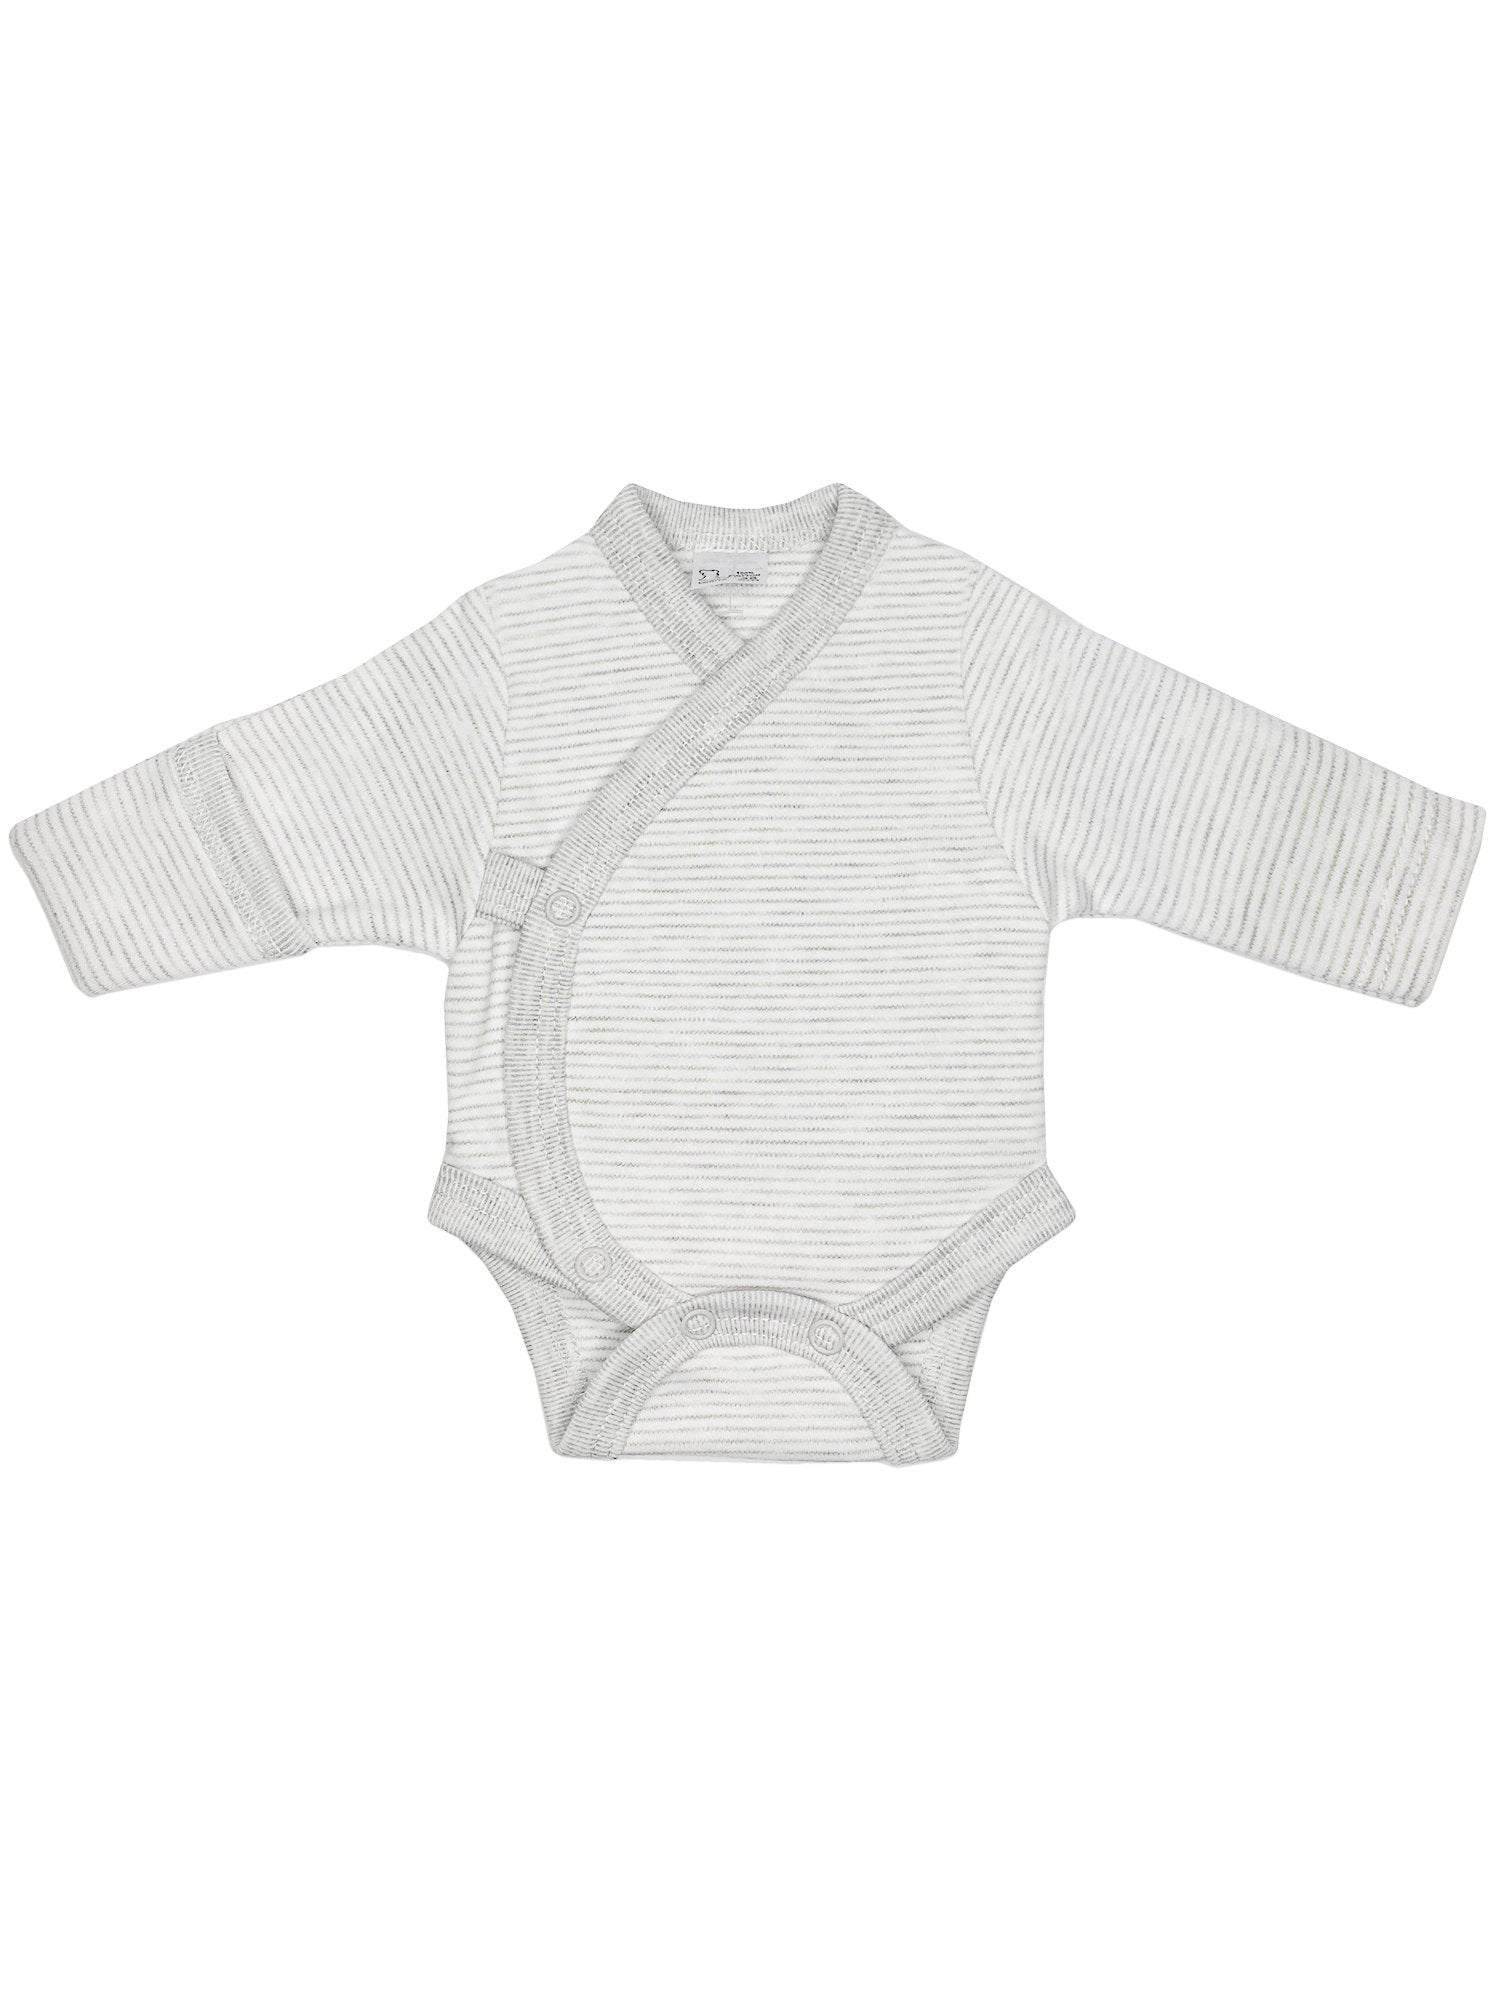 Early Baby Bodysuit - Grey Stripe - Bodysuit / Vest - Lorita